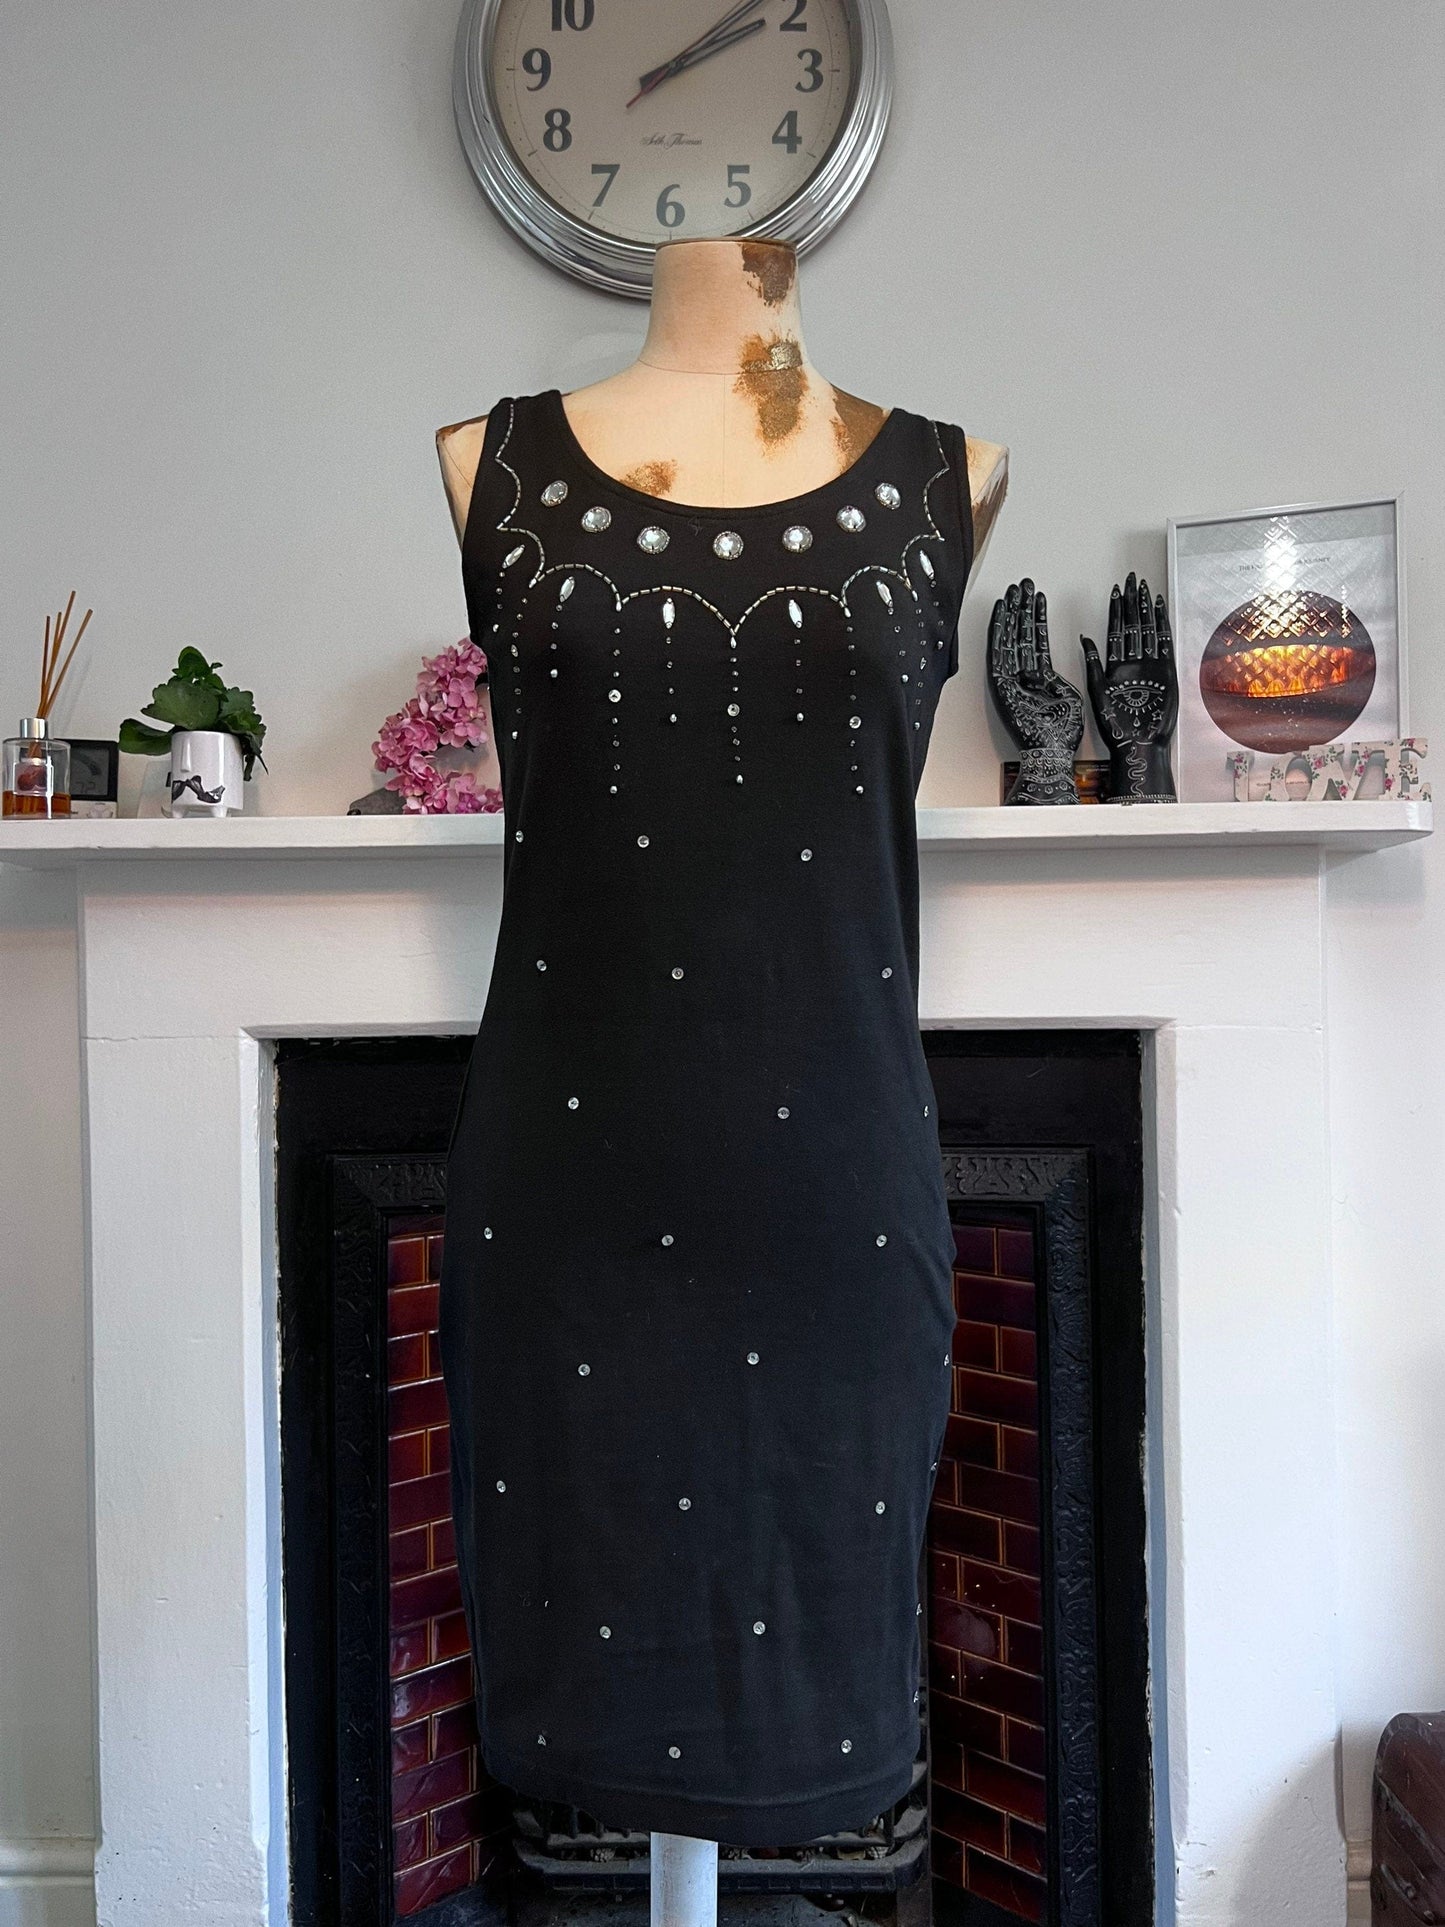 Vintage Black Silver Beaded Mini Dress - Size UK8/12 Stretch Lycra Body Con Black & beads Dress